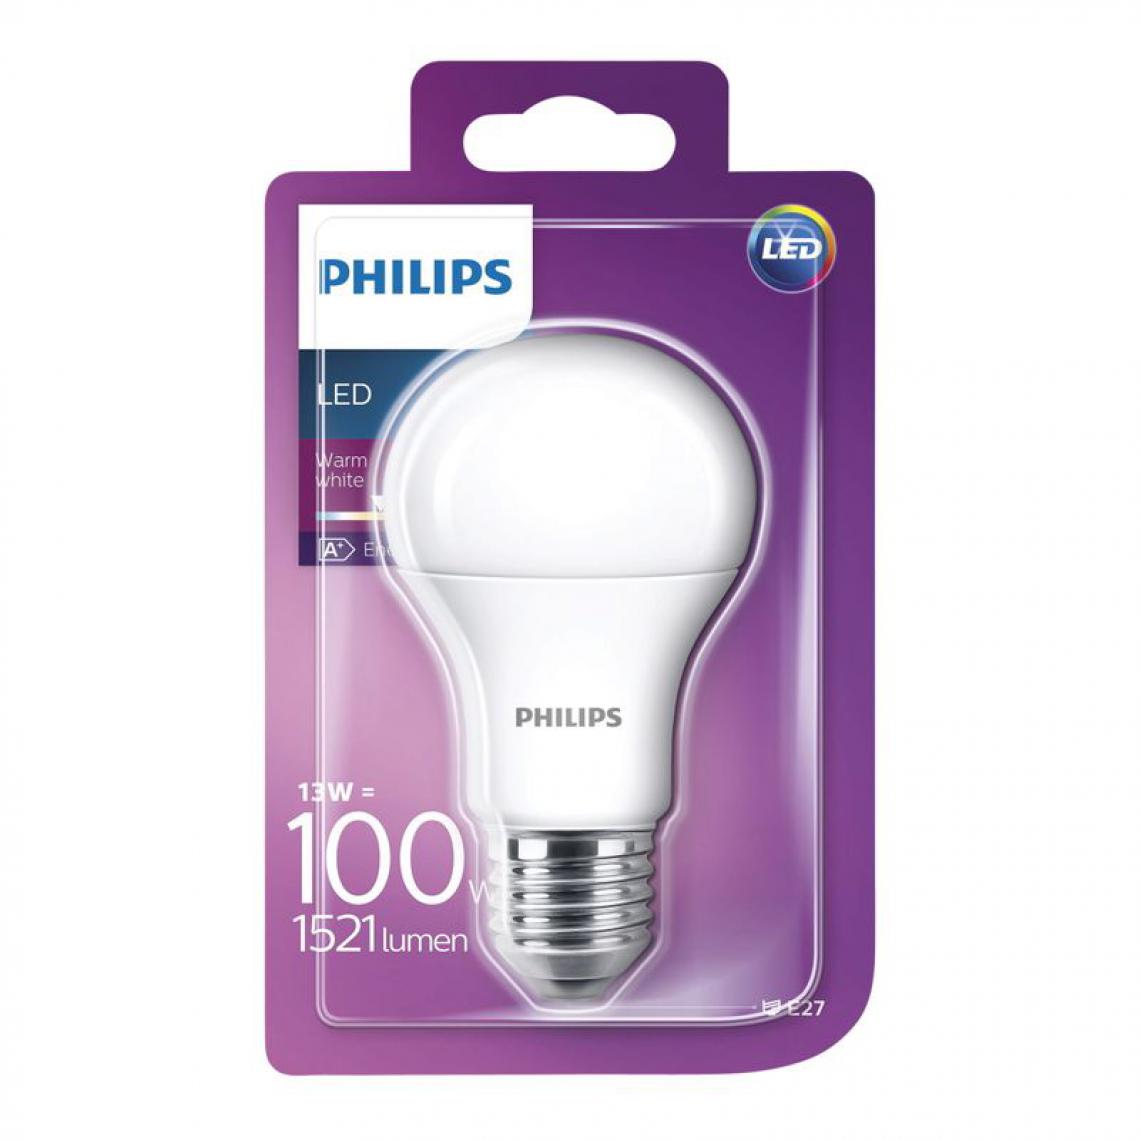 Philips - Ampoule LED 13W équiv 100W 1521lm E27 Blanc chaud - Ampoules LED